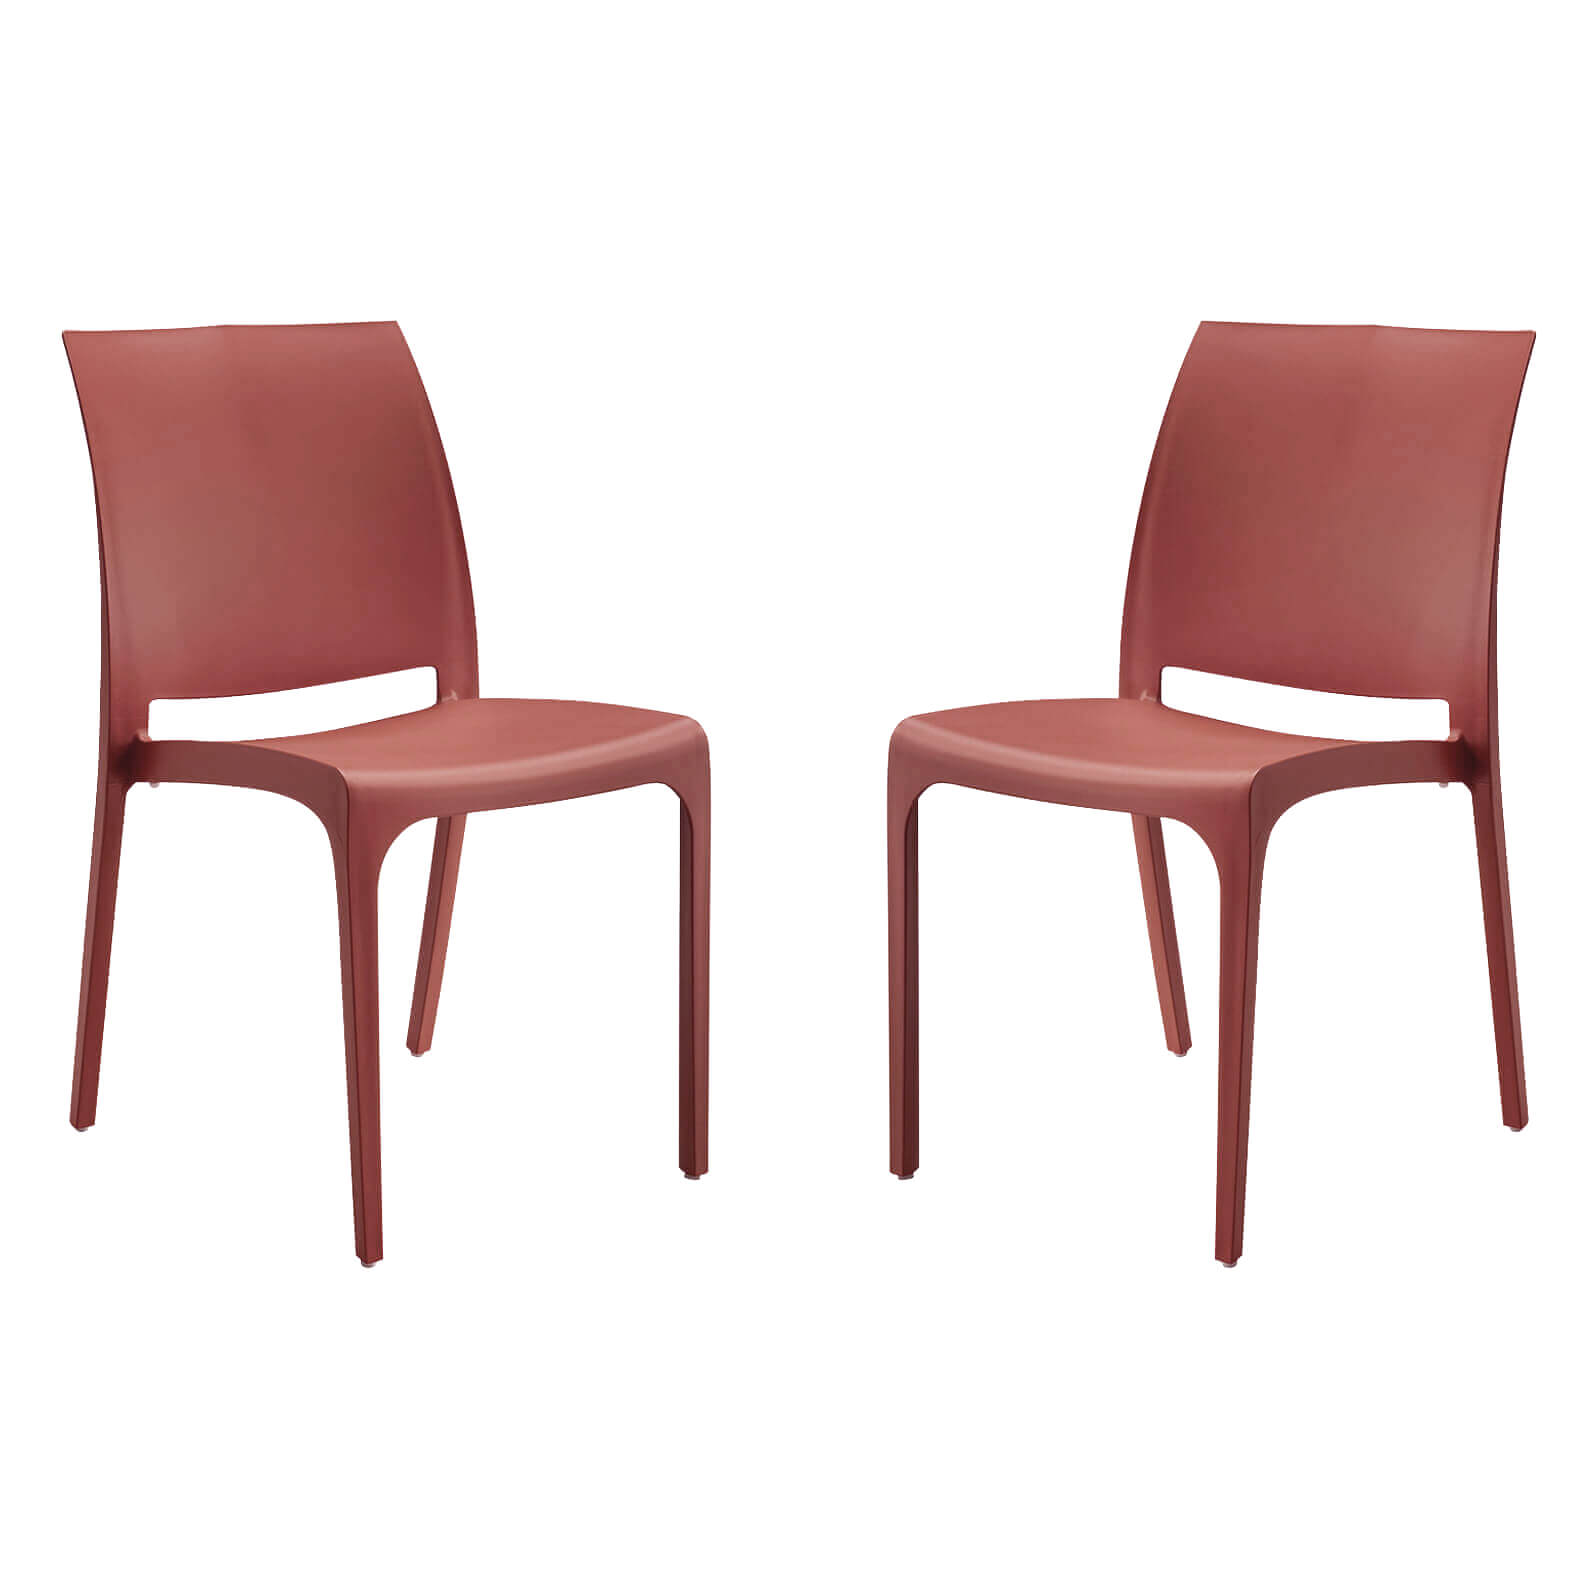 Milani Home set di 2 sedie poltrone da giardino in plastica design moderno colorata Rosso Rosso 46 x 80 x 54 cm